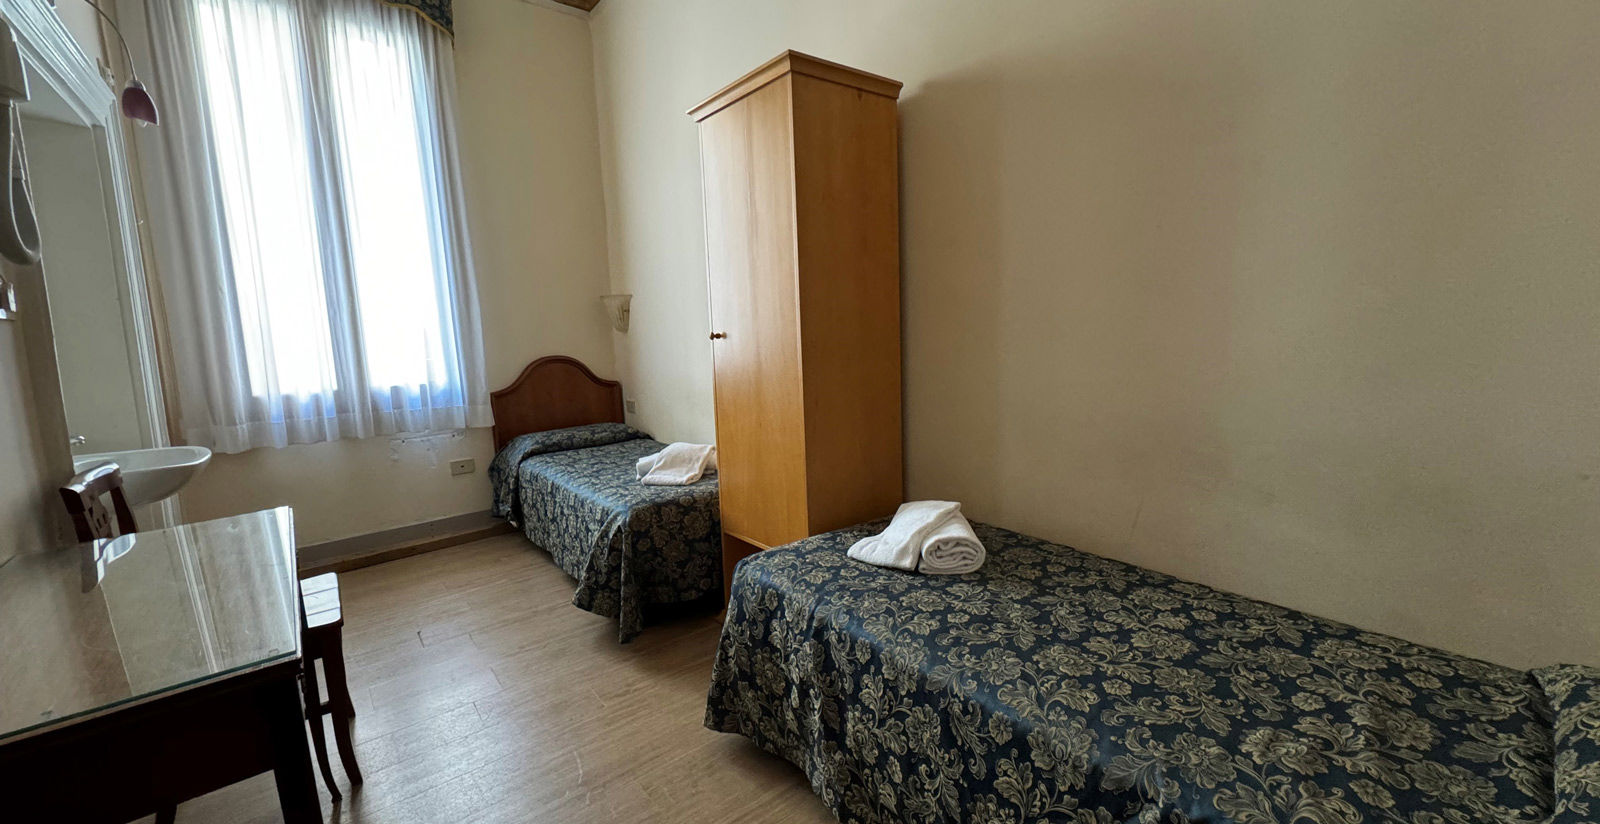 Hotel Alla Fava - Camera Doppia con bagno in comune 2